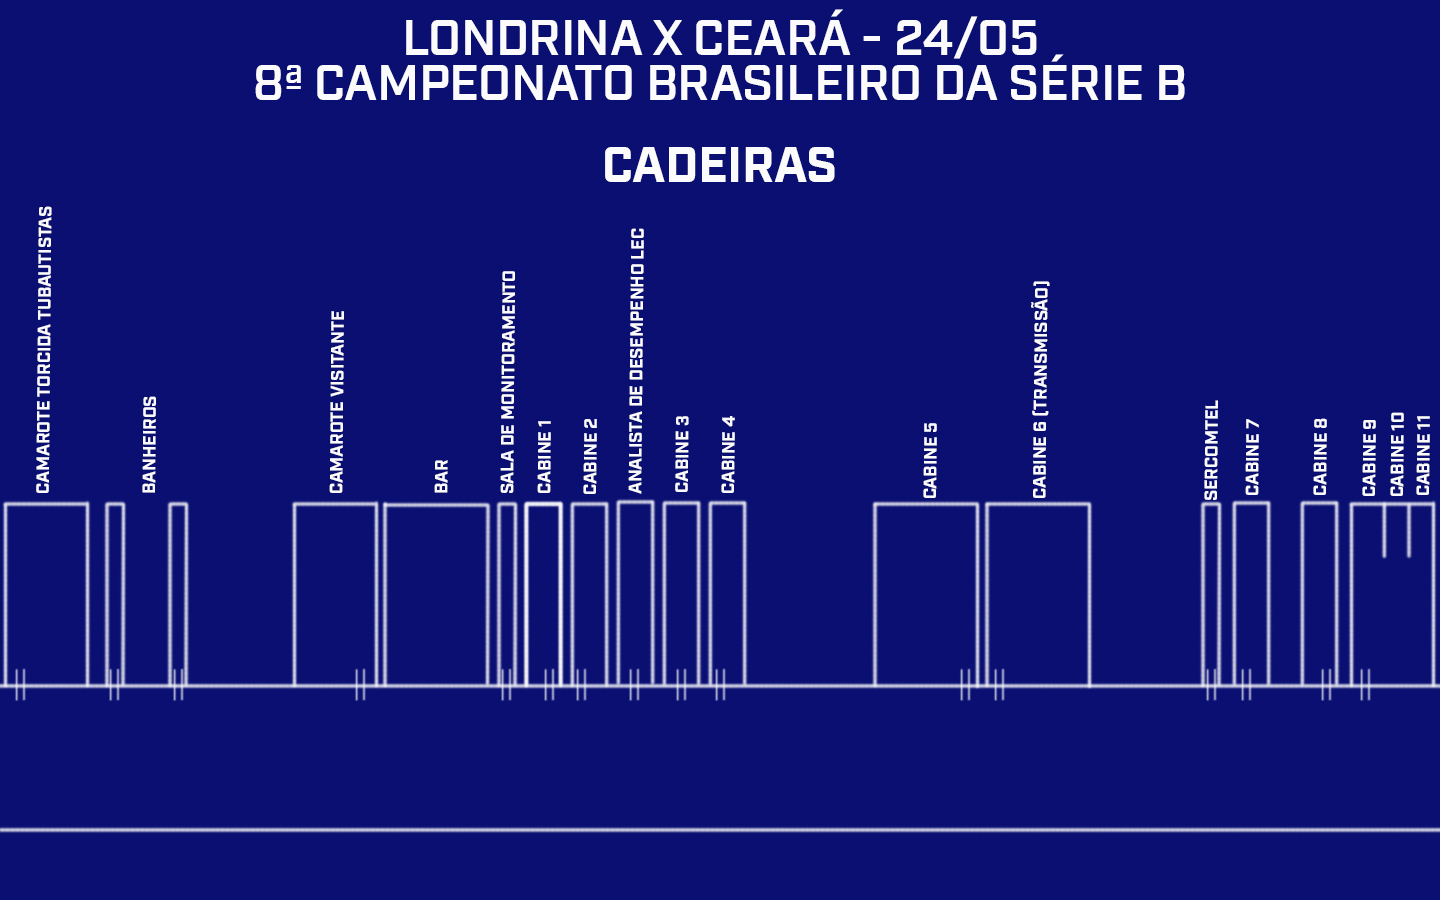 Credenciamento do Estádio do Café | Londrina x Ceará - 8ª rodada do Campeonato Brasileiro da Série B